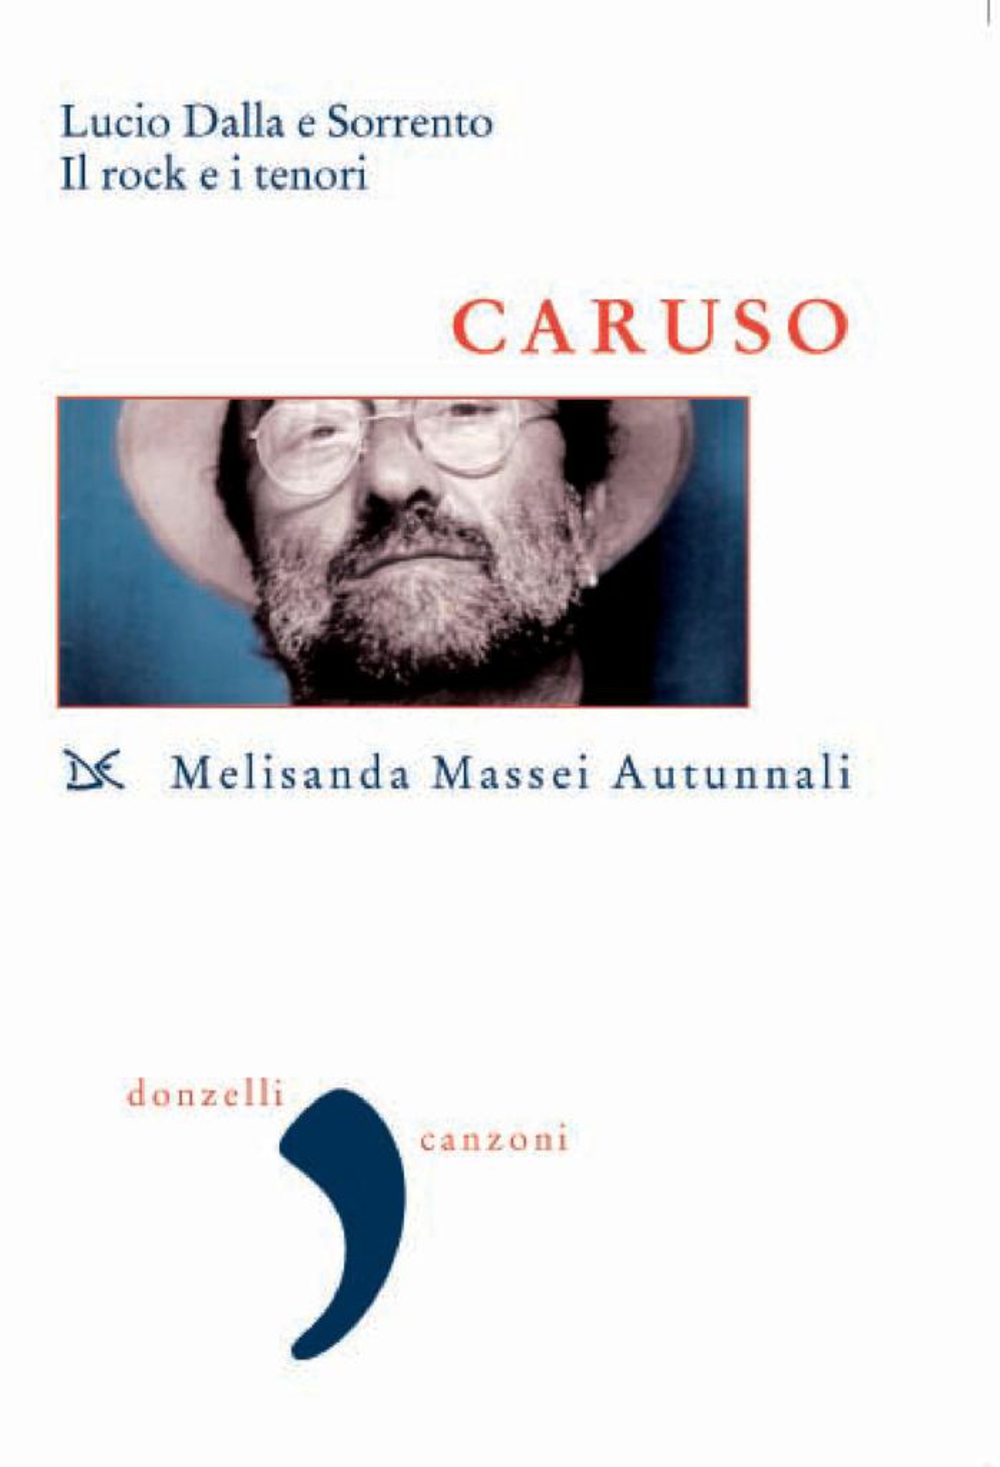 E-book, Caruso : Lucio Dalla e Sorrento, il rock e i tenori, Massei Autunnali, Melisanda, Donzelli